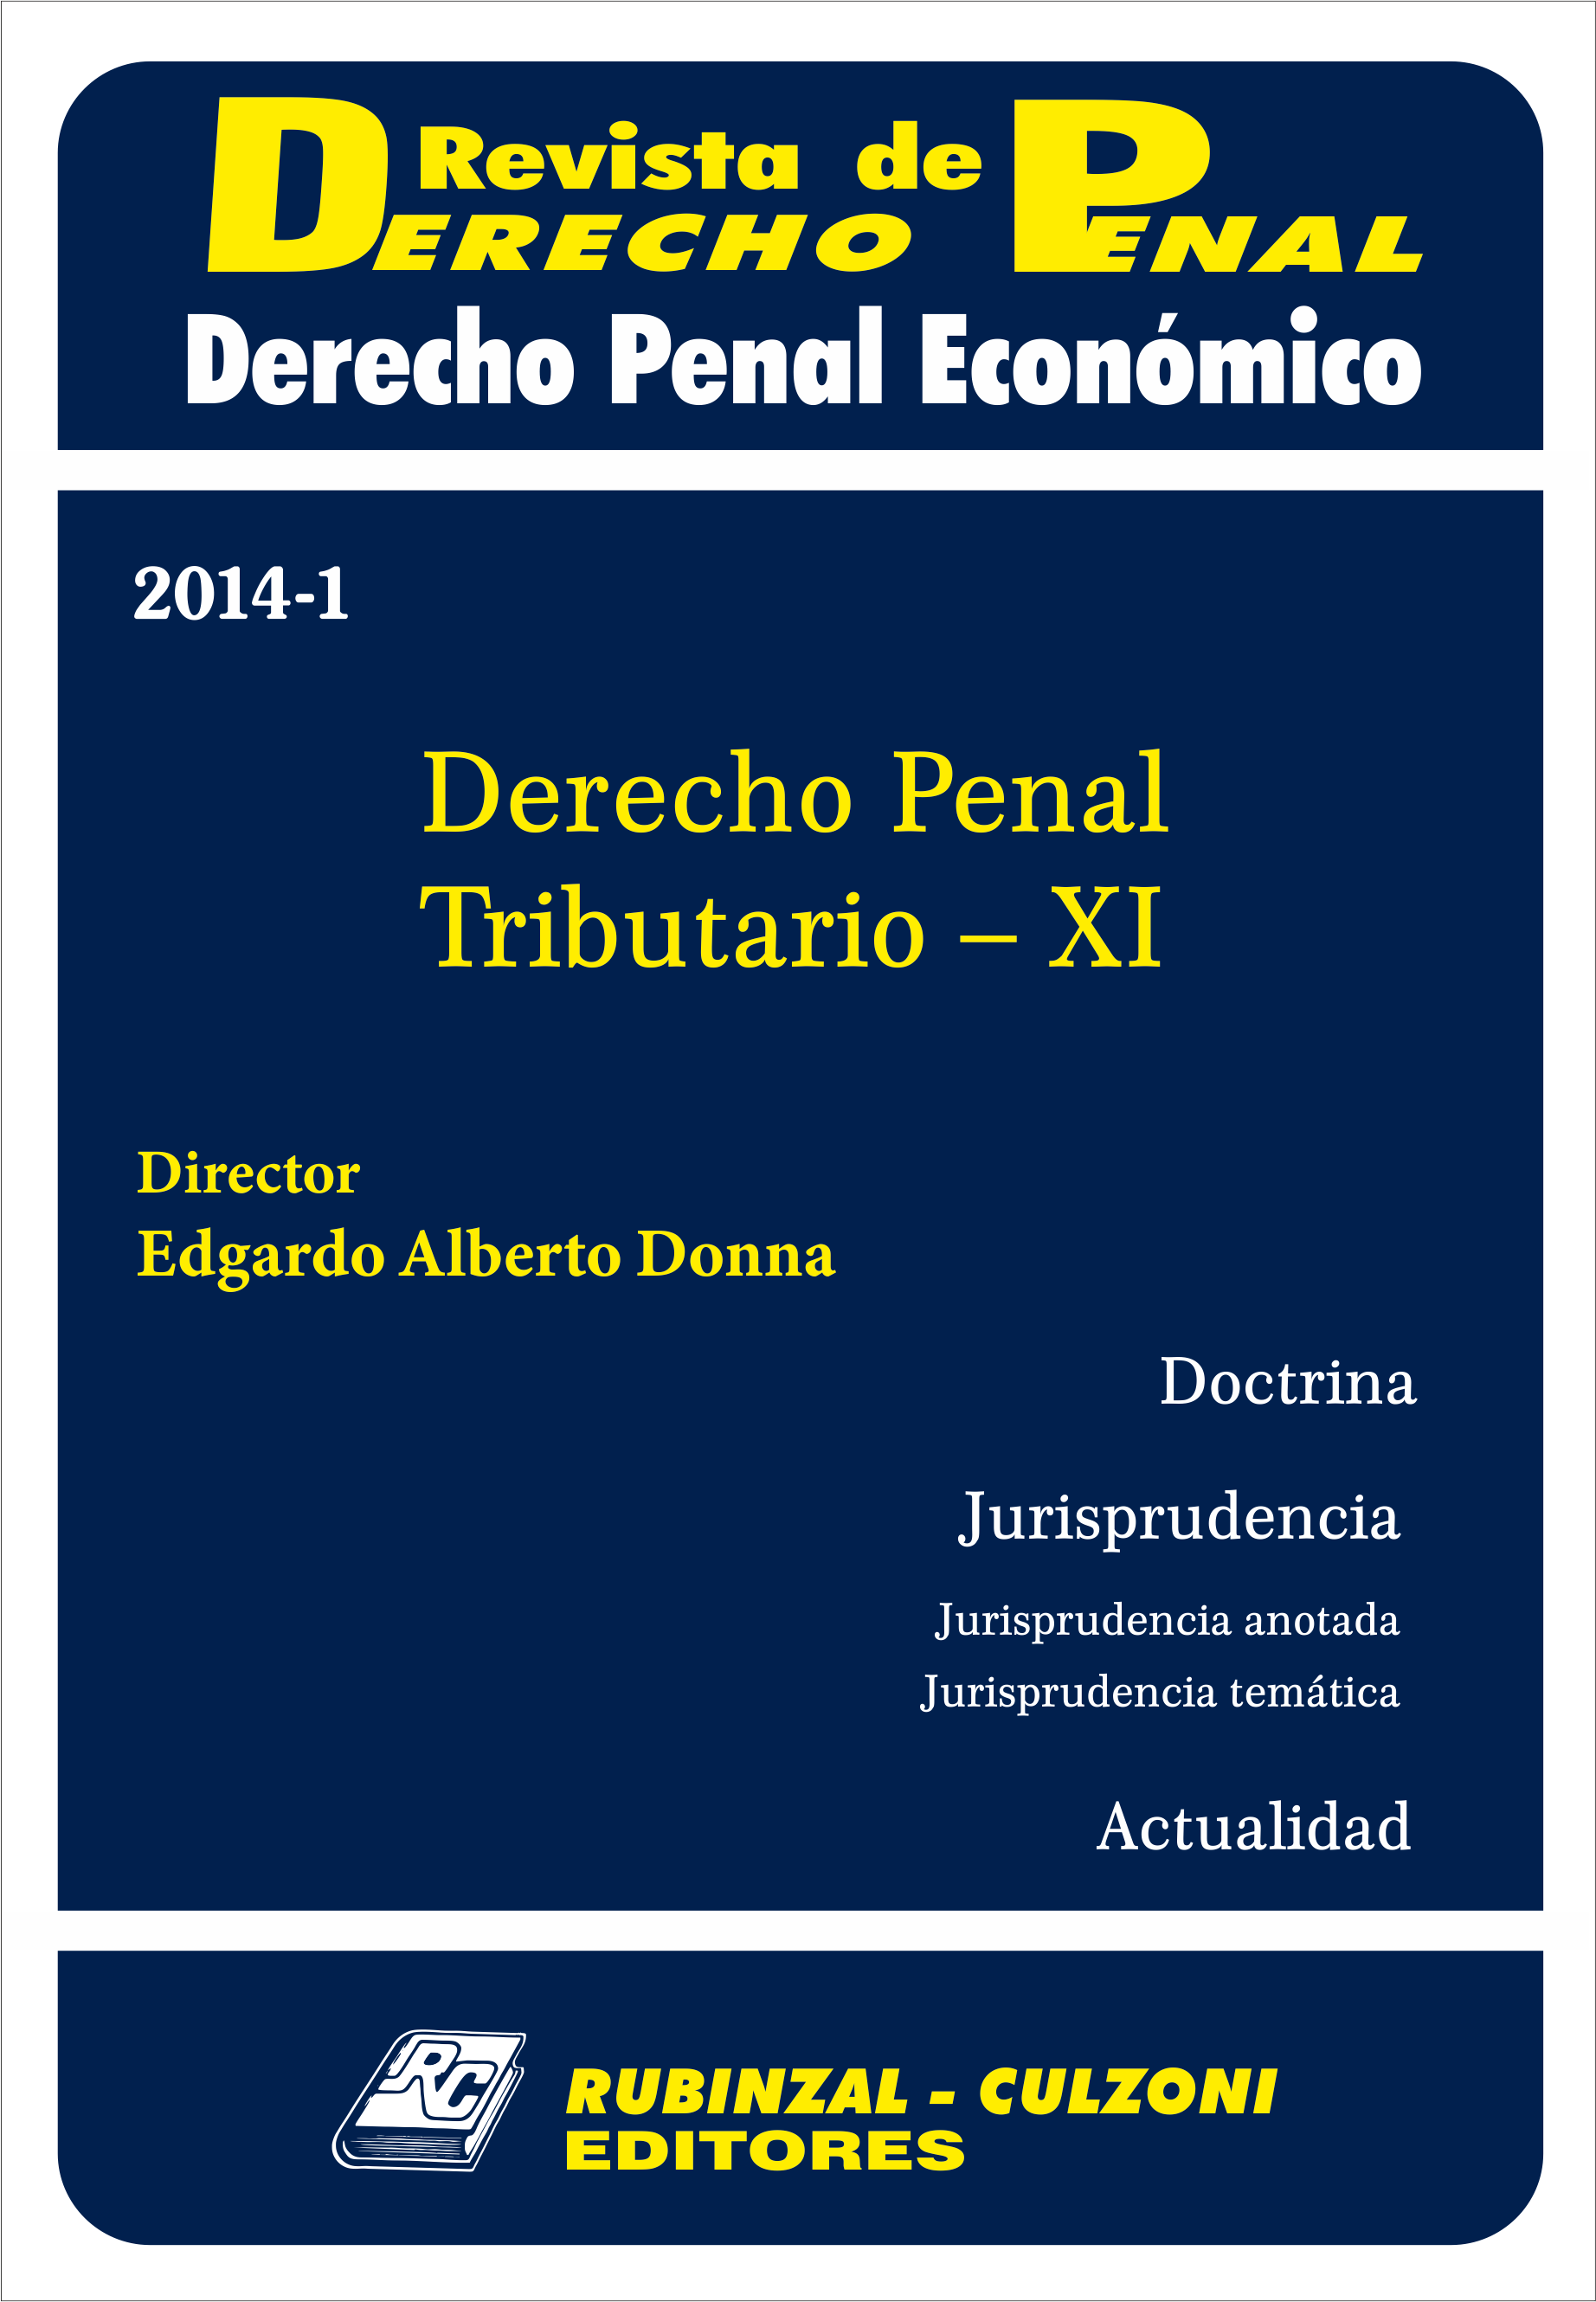 Revista de Derecho Penal Económico - Derecho Penal Tributario - XI.